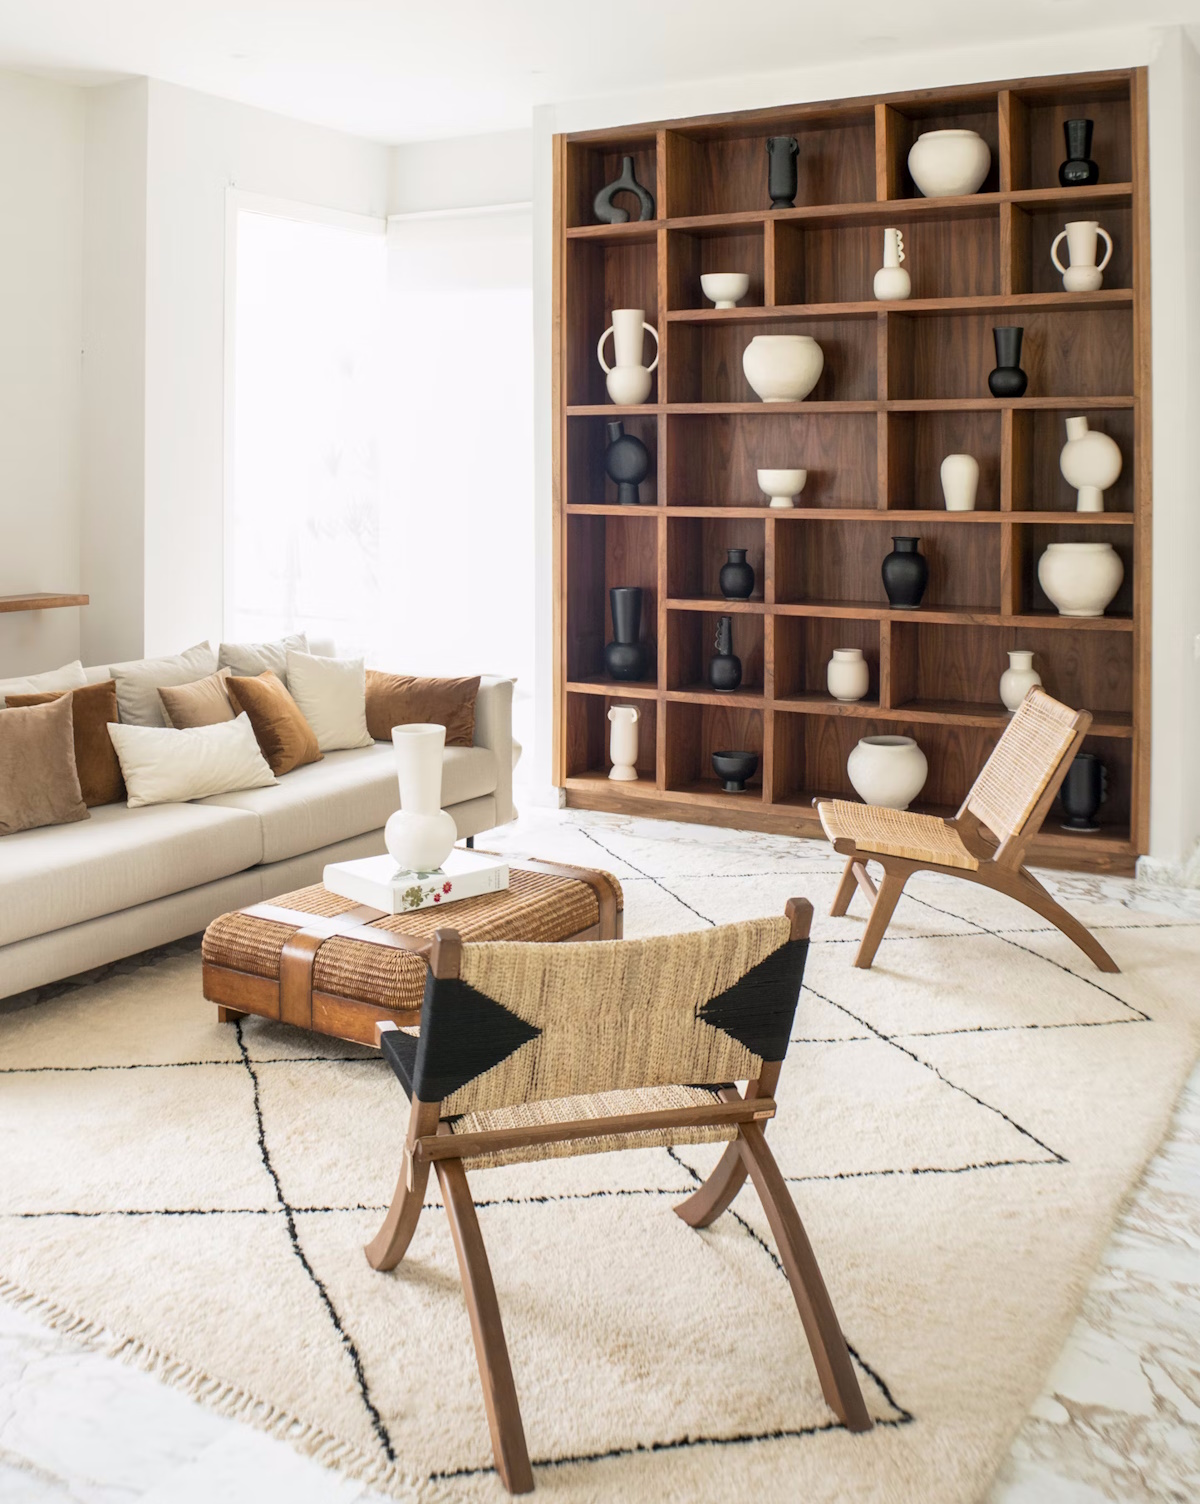 Minimaluxe la estupenda combinación de minimalismo y lujo para un hogar ordenado y relax